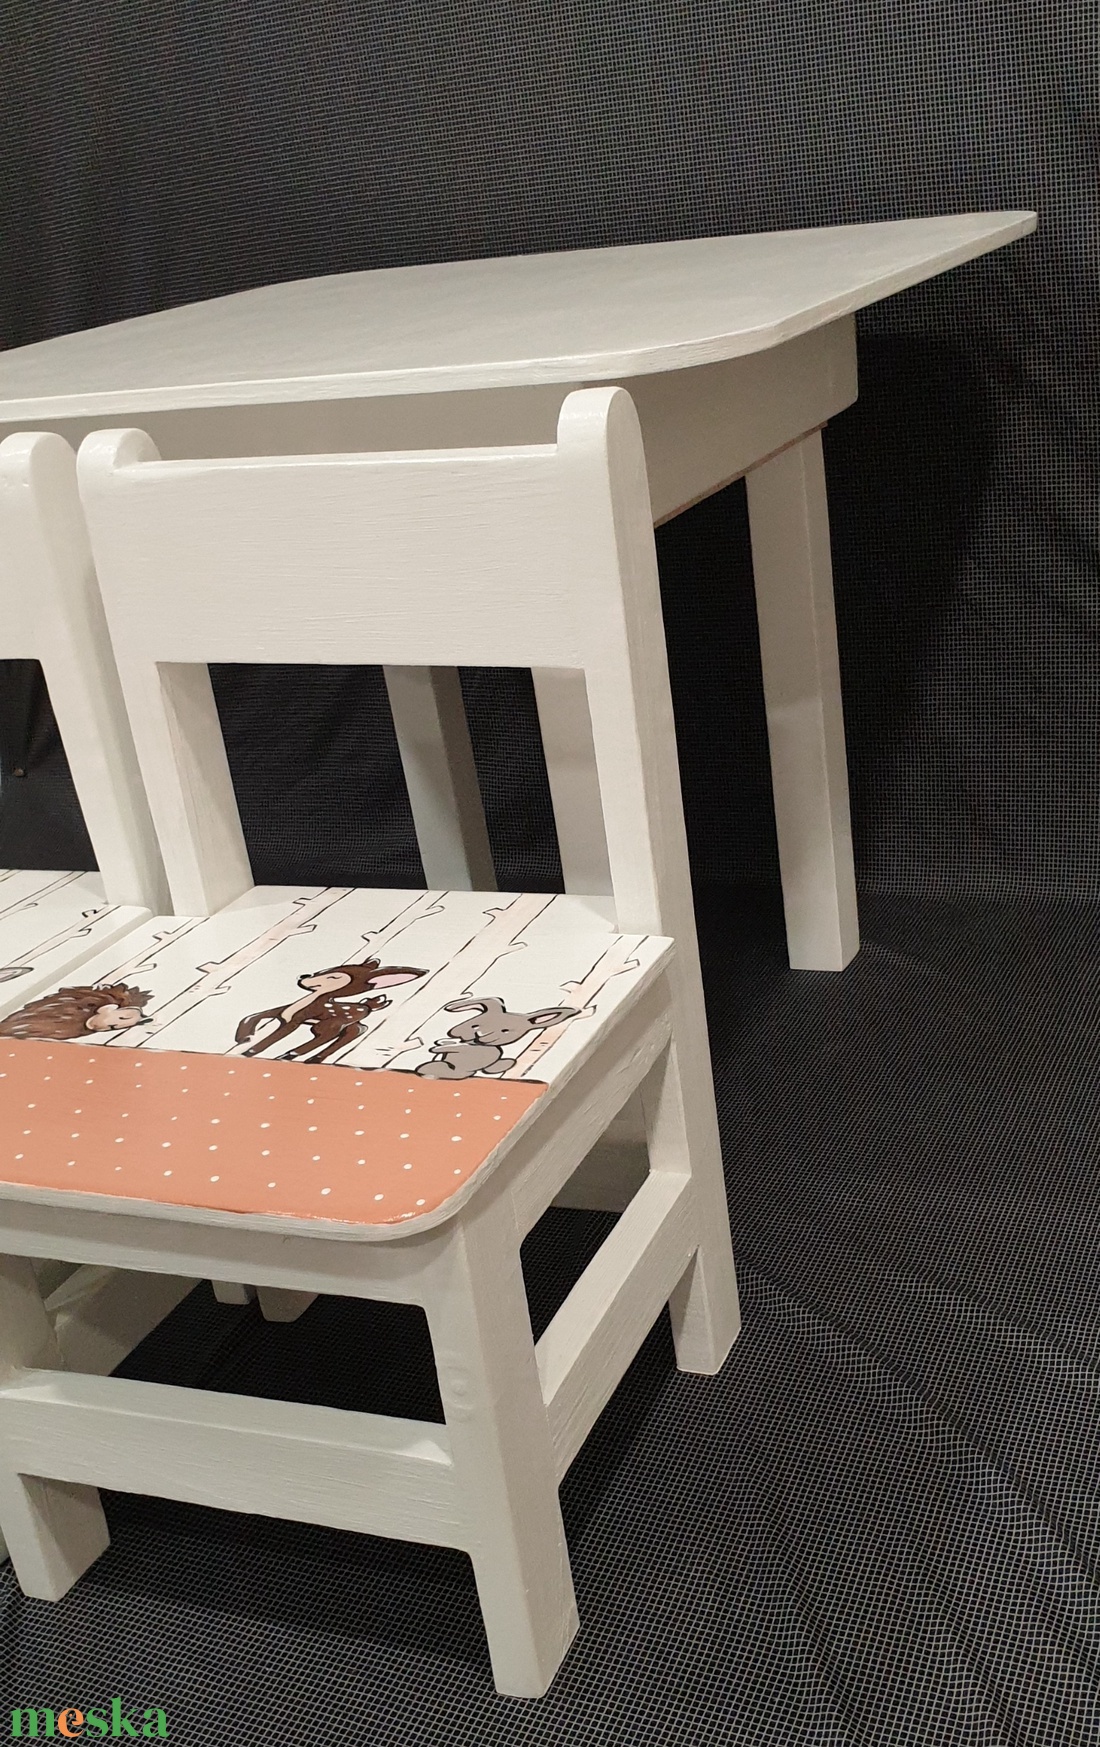 Asztal és szék - otthon & lakás - babaszoba, gyerekszoba - gyerek asztal székkel - Meska.hu